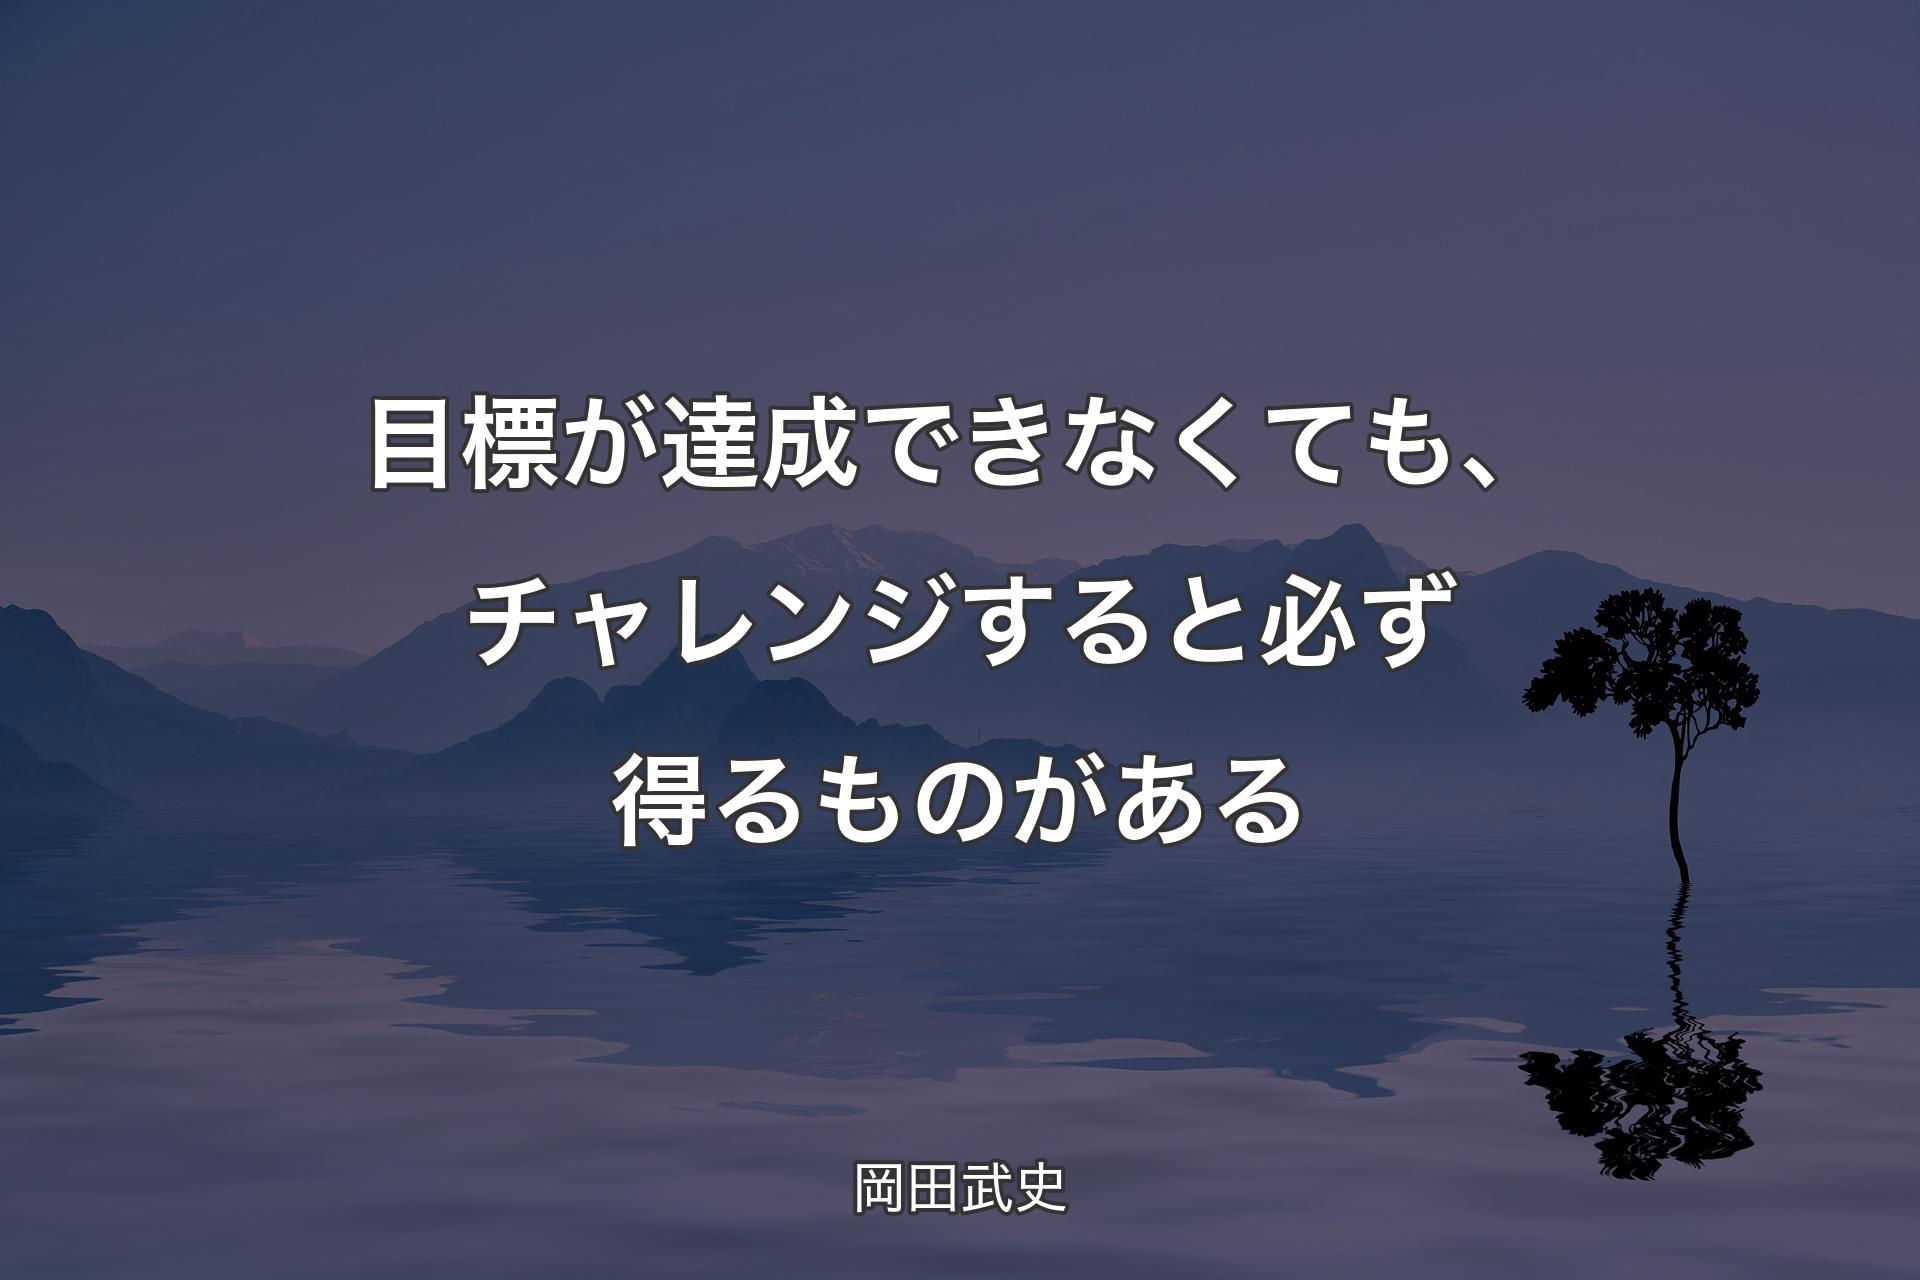 【背景4】目�標が達成できなくても、チャレンジすると必ず得るものがある - 岡田武史